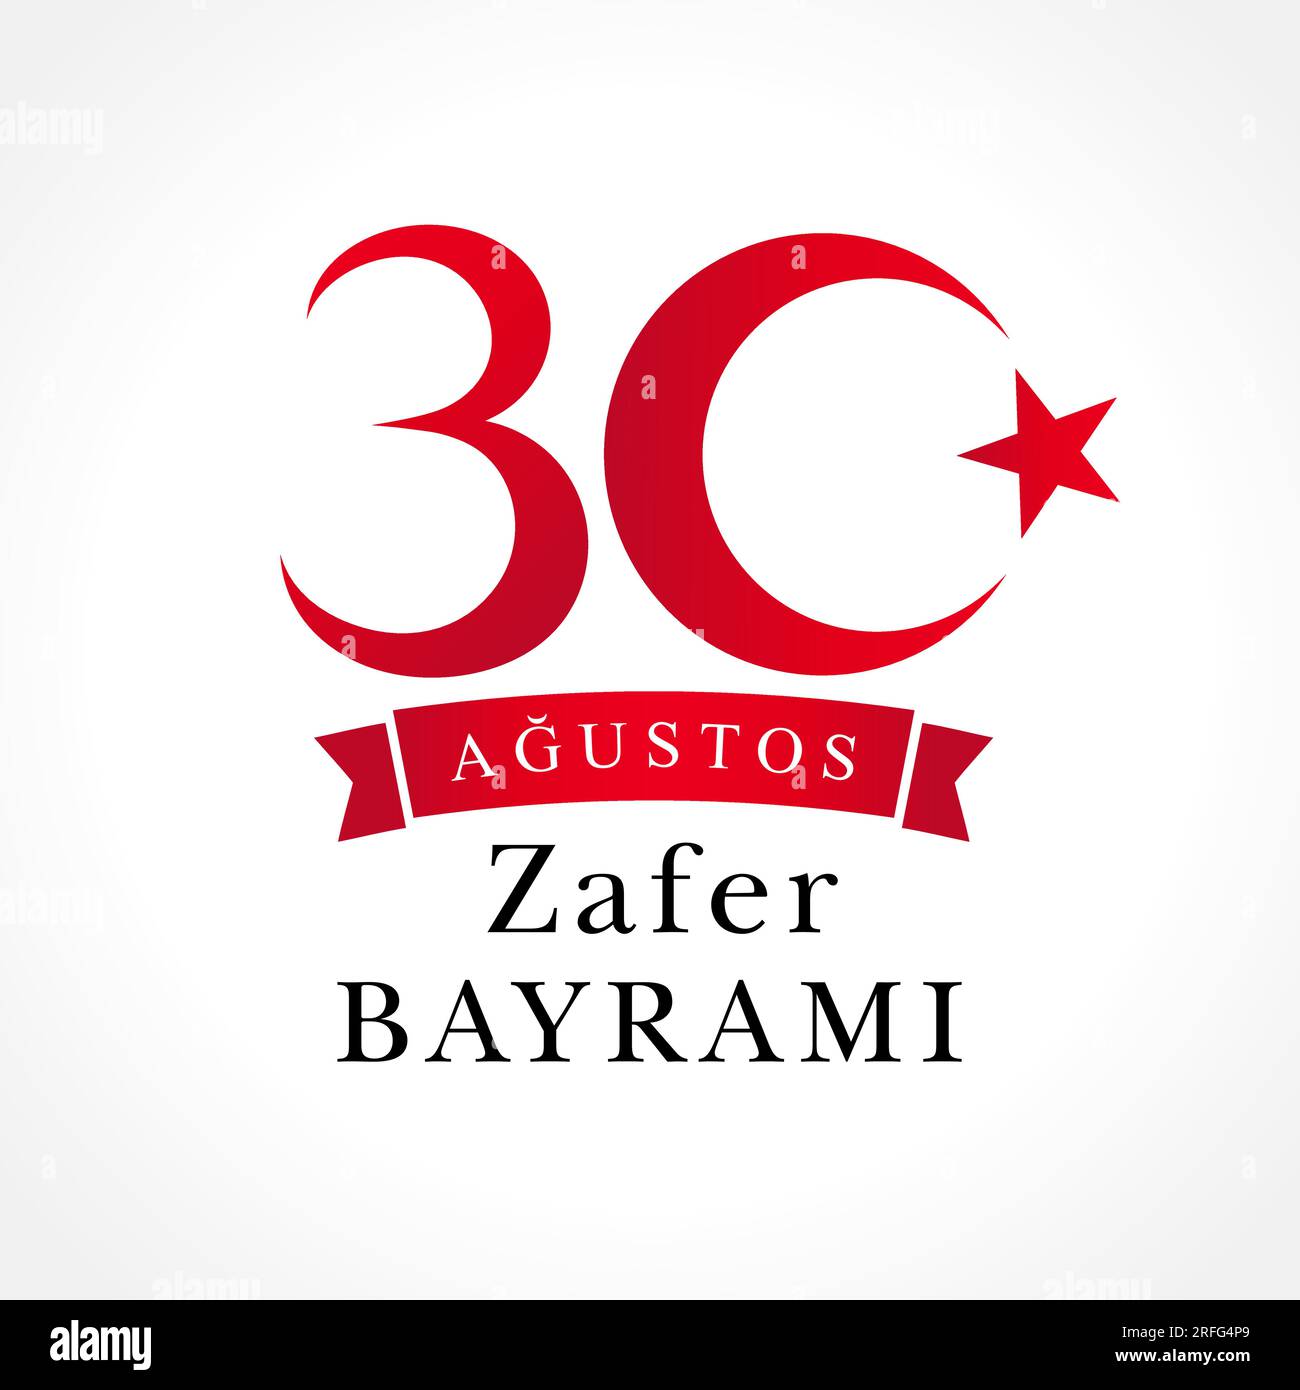 30 agosto zafer bayrami - giorno della Vittoria della Turchia. Traduzione - agosto 30 celebrazione della Vittoria. Design del poster. Illustrazione Vettoriale